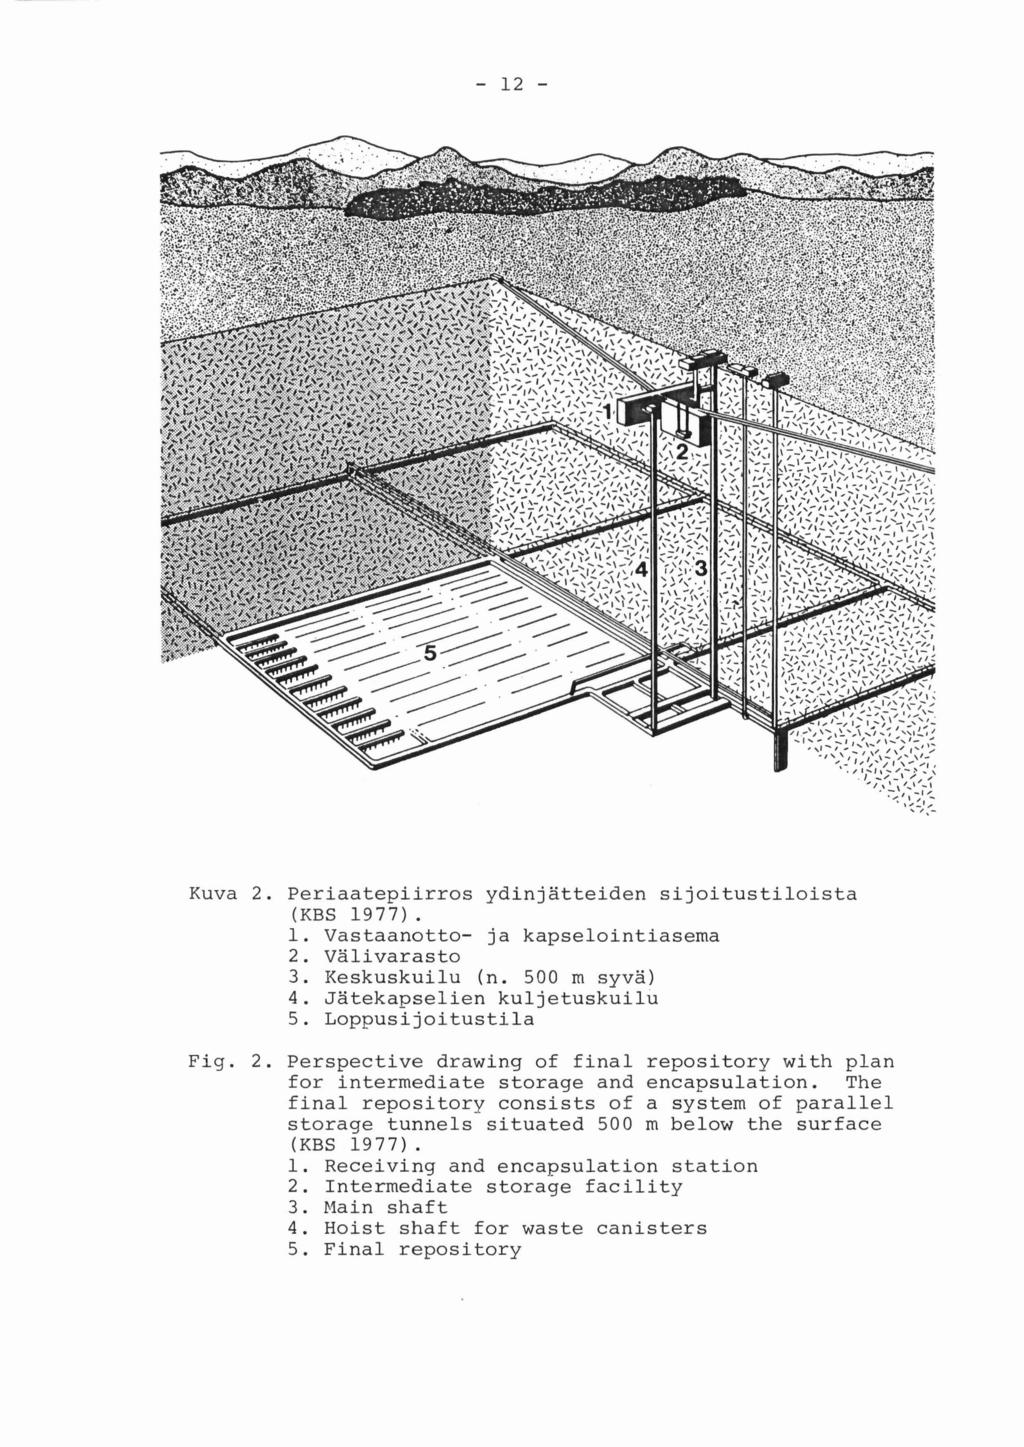 Kuva 2. Periaatepiirros ydinjatteiden sijoitustiloista (KBS 1977). 1. Vastaanotto- ja kapselointiasema 2. Valivarasto 3. Keskuskuilu (n. 500 m syva) 4. Jatekapselien kuljetuskuilu 5.